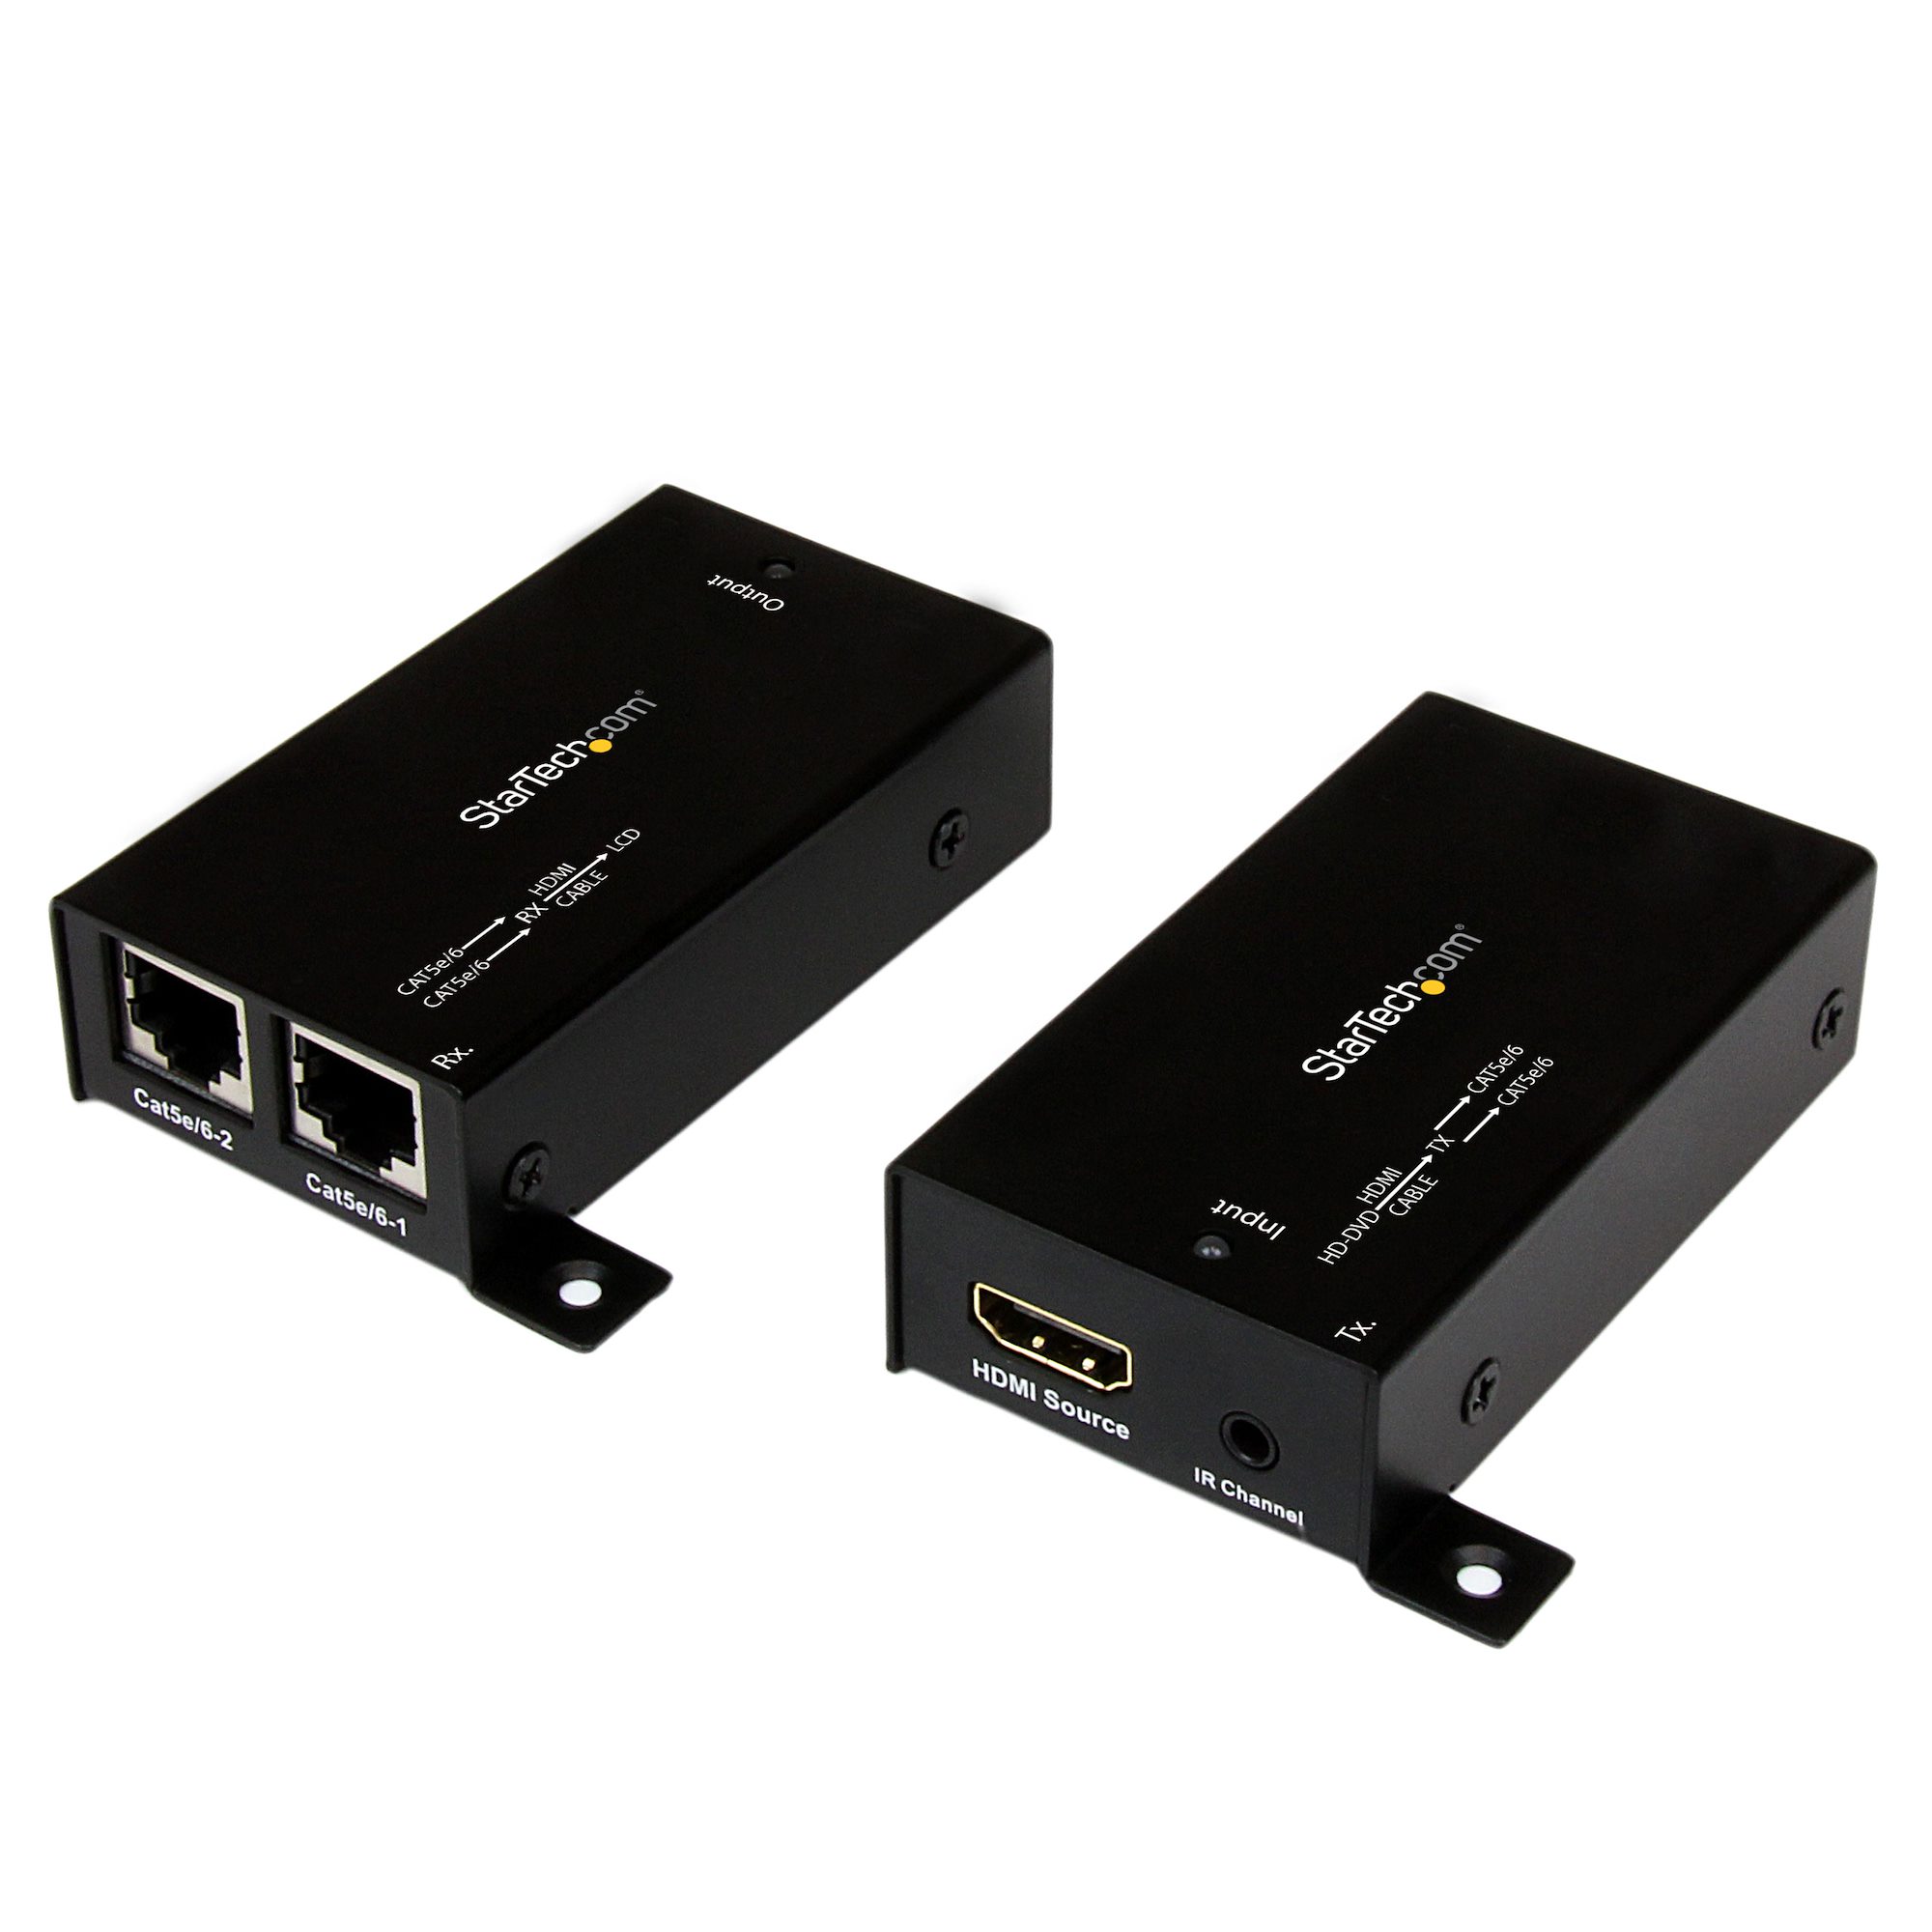 HDMI延長器 Cat5 x2使用 30m伝送 IR付属 外部電源不要 HDMI®エクステンダ 日本